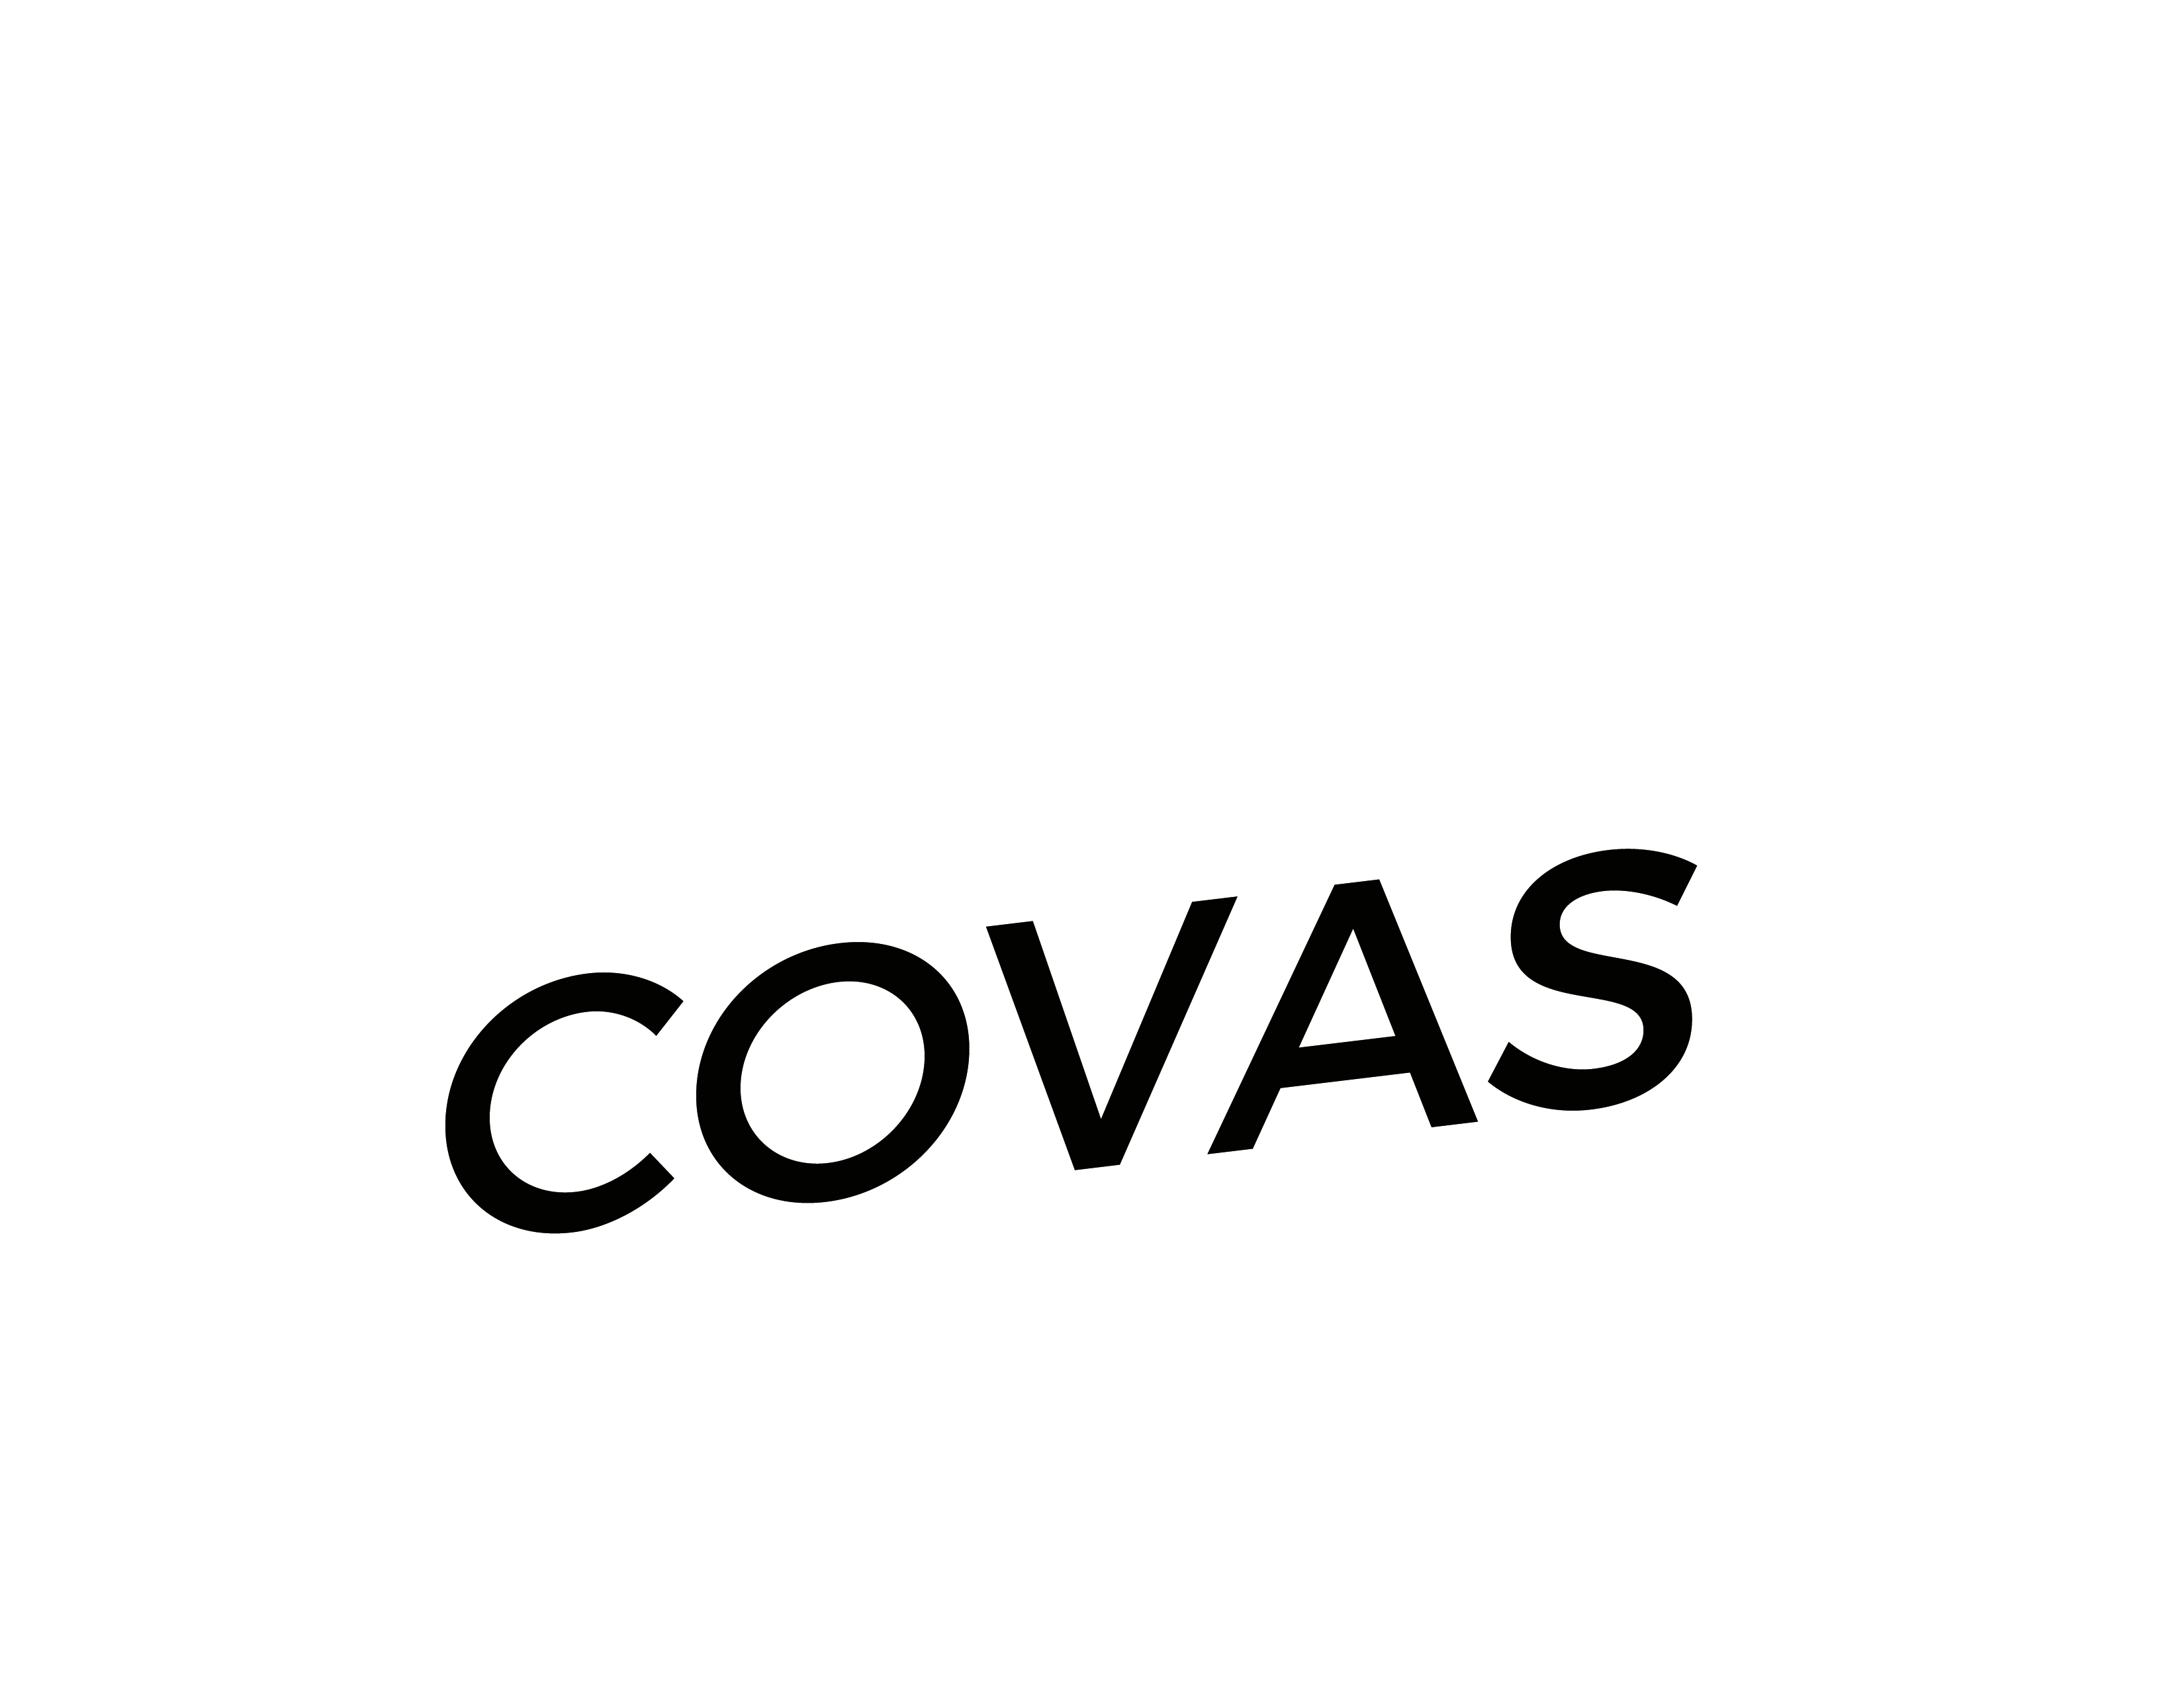 Vinicius Covas